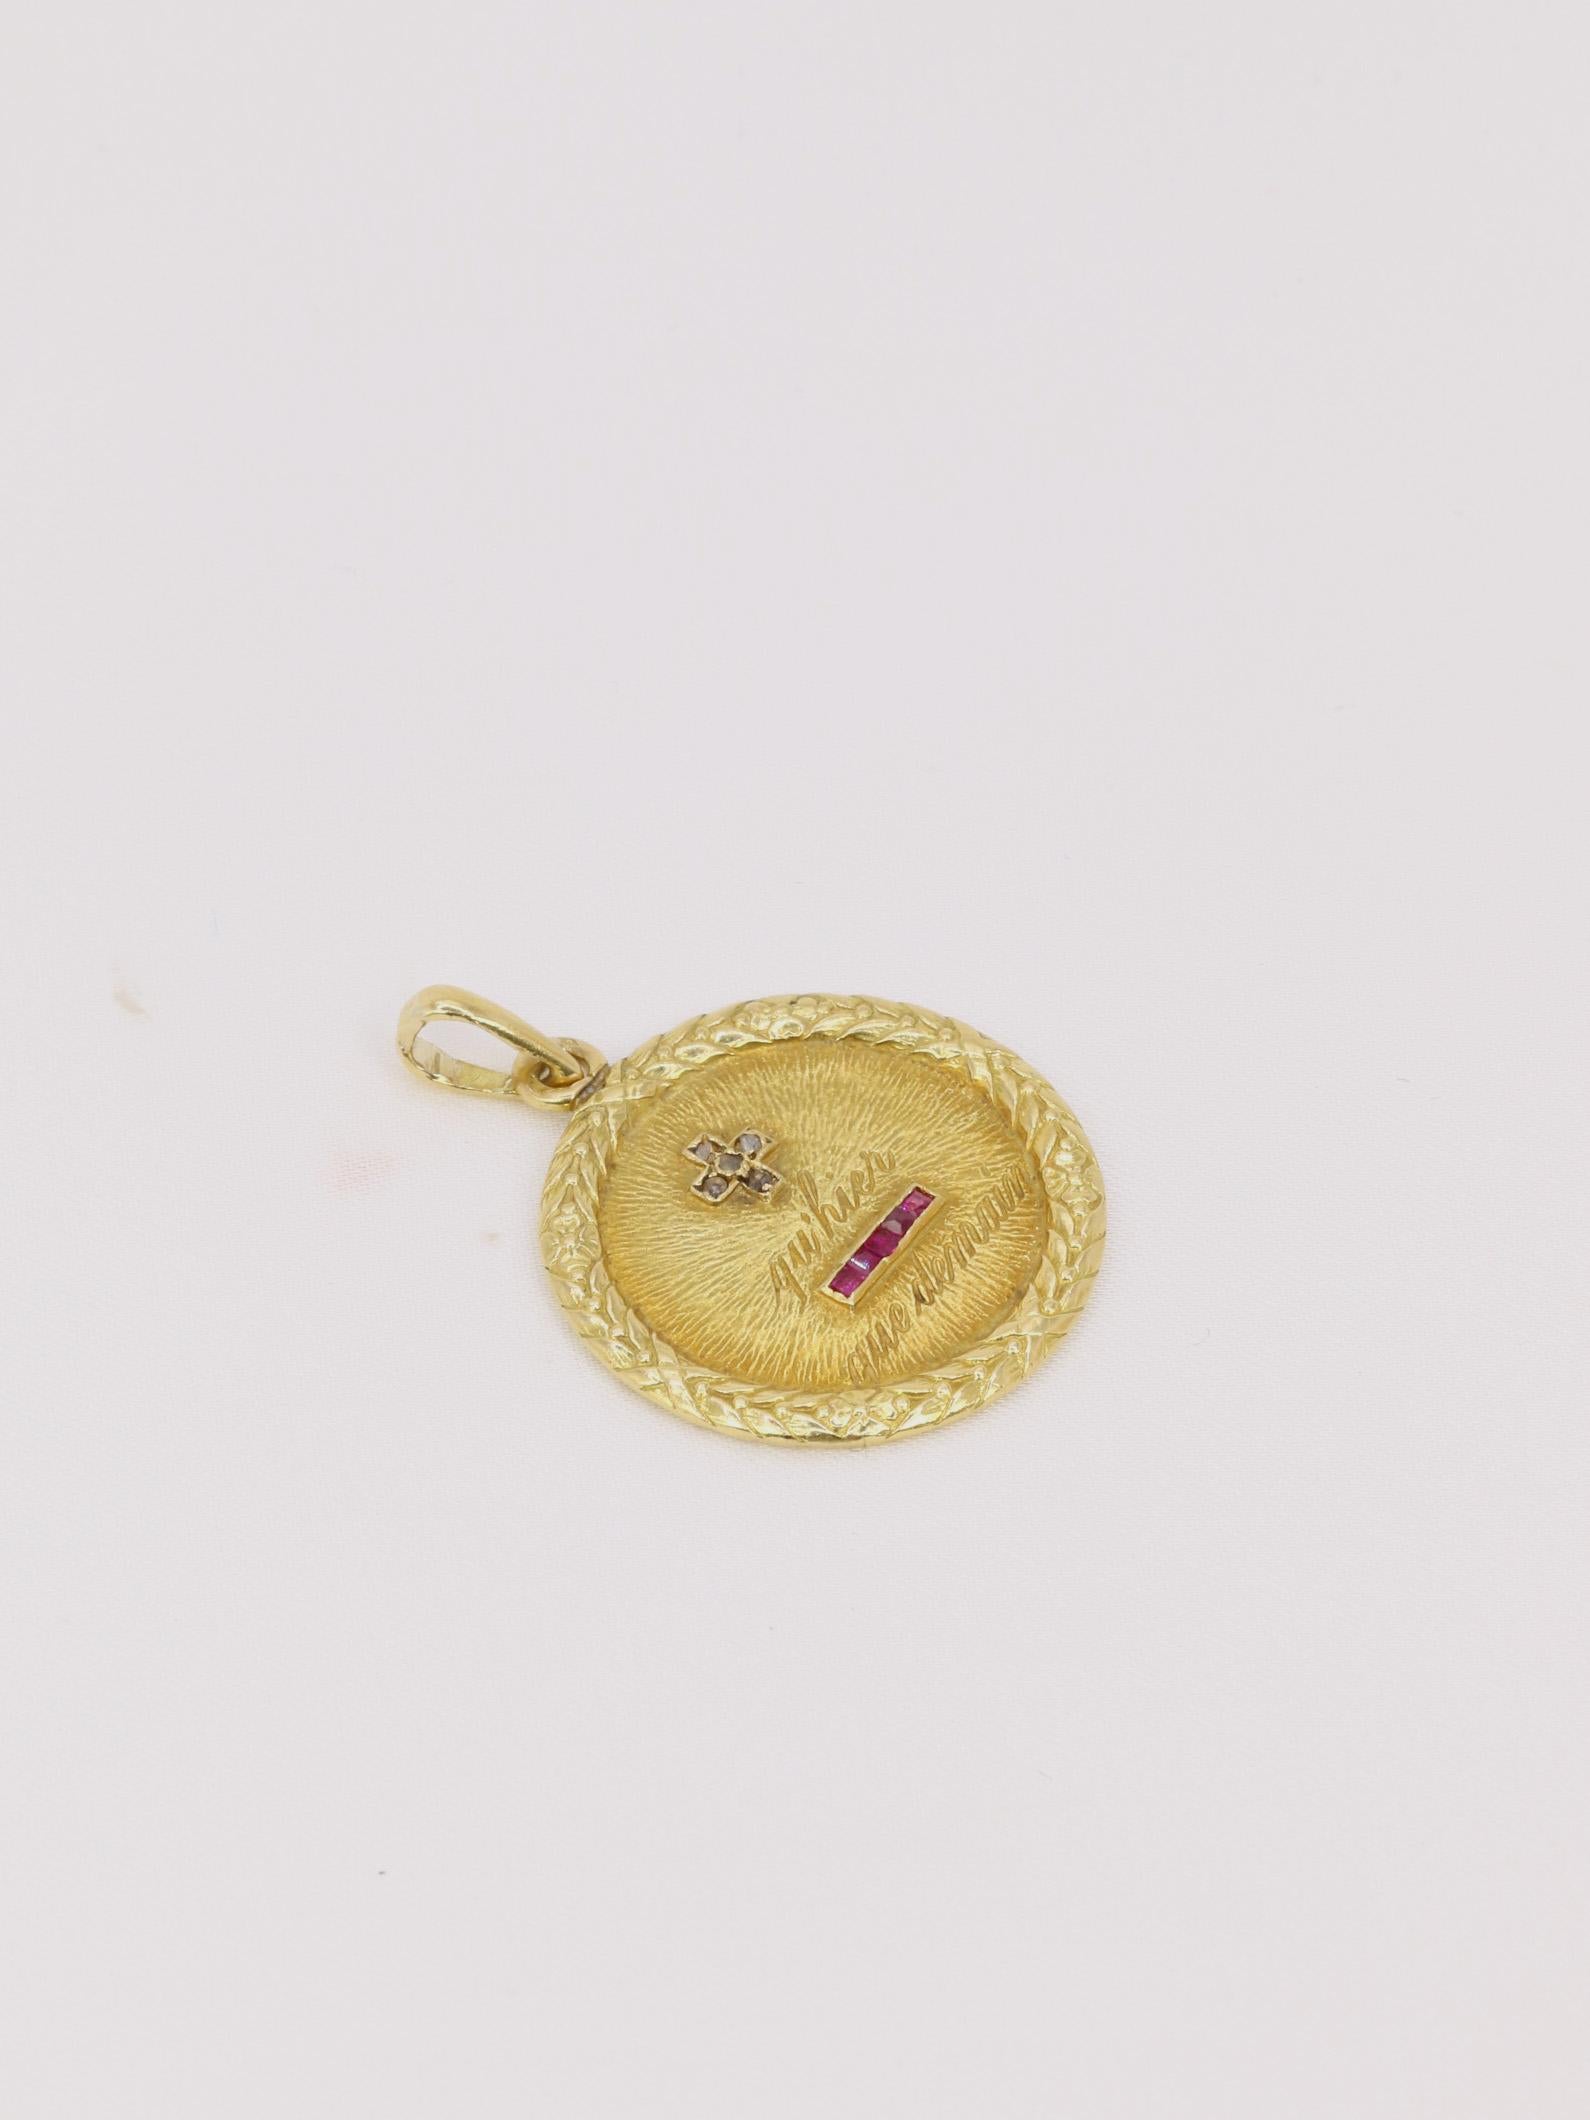 Médaille amour Augis ronde en or, diamants et rubis ca. 1910, Plus qu’hier moins que demain

Médaille Amour en or jaune 18k (750°/°°) sertie de 5 rubis synthétiques et 5 diamants taille rose. La médaille est entourée d'un motif fleuri